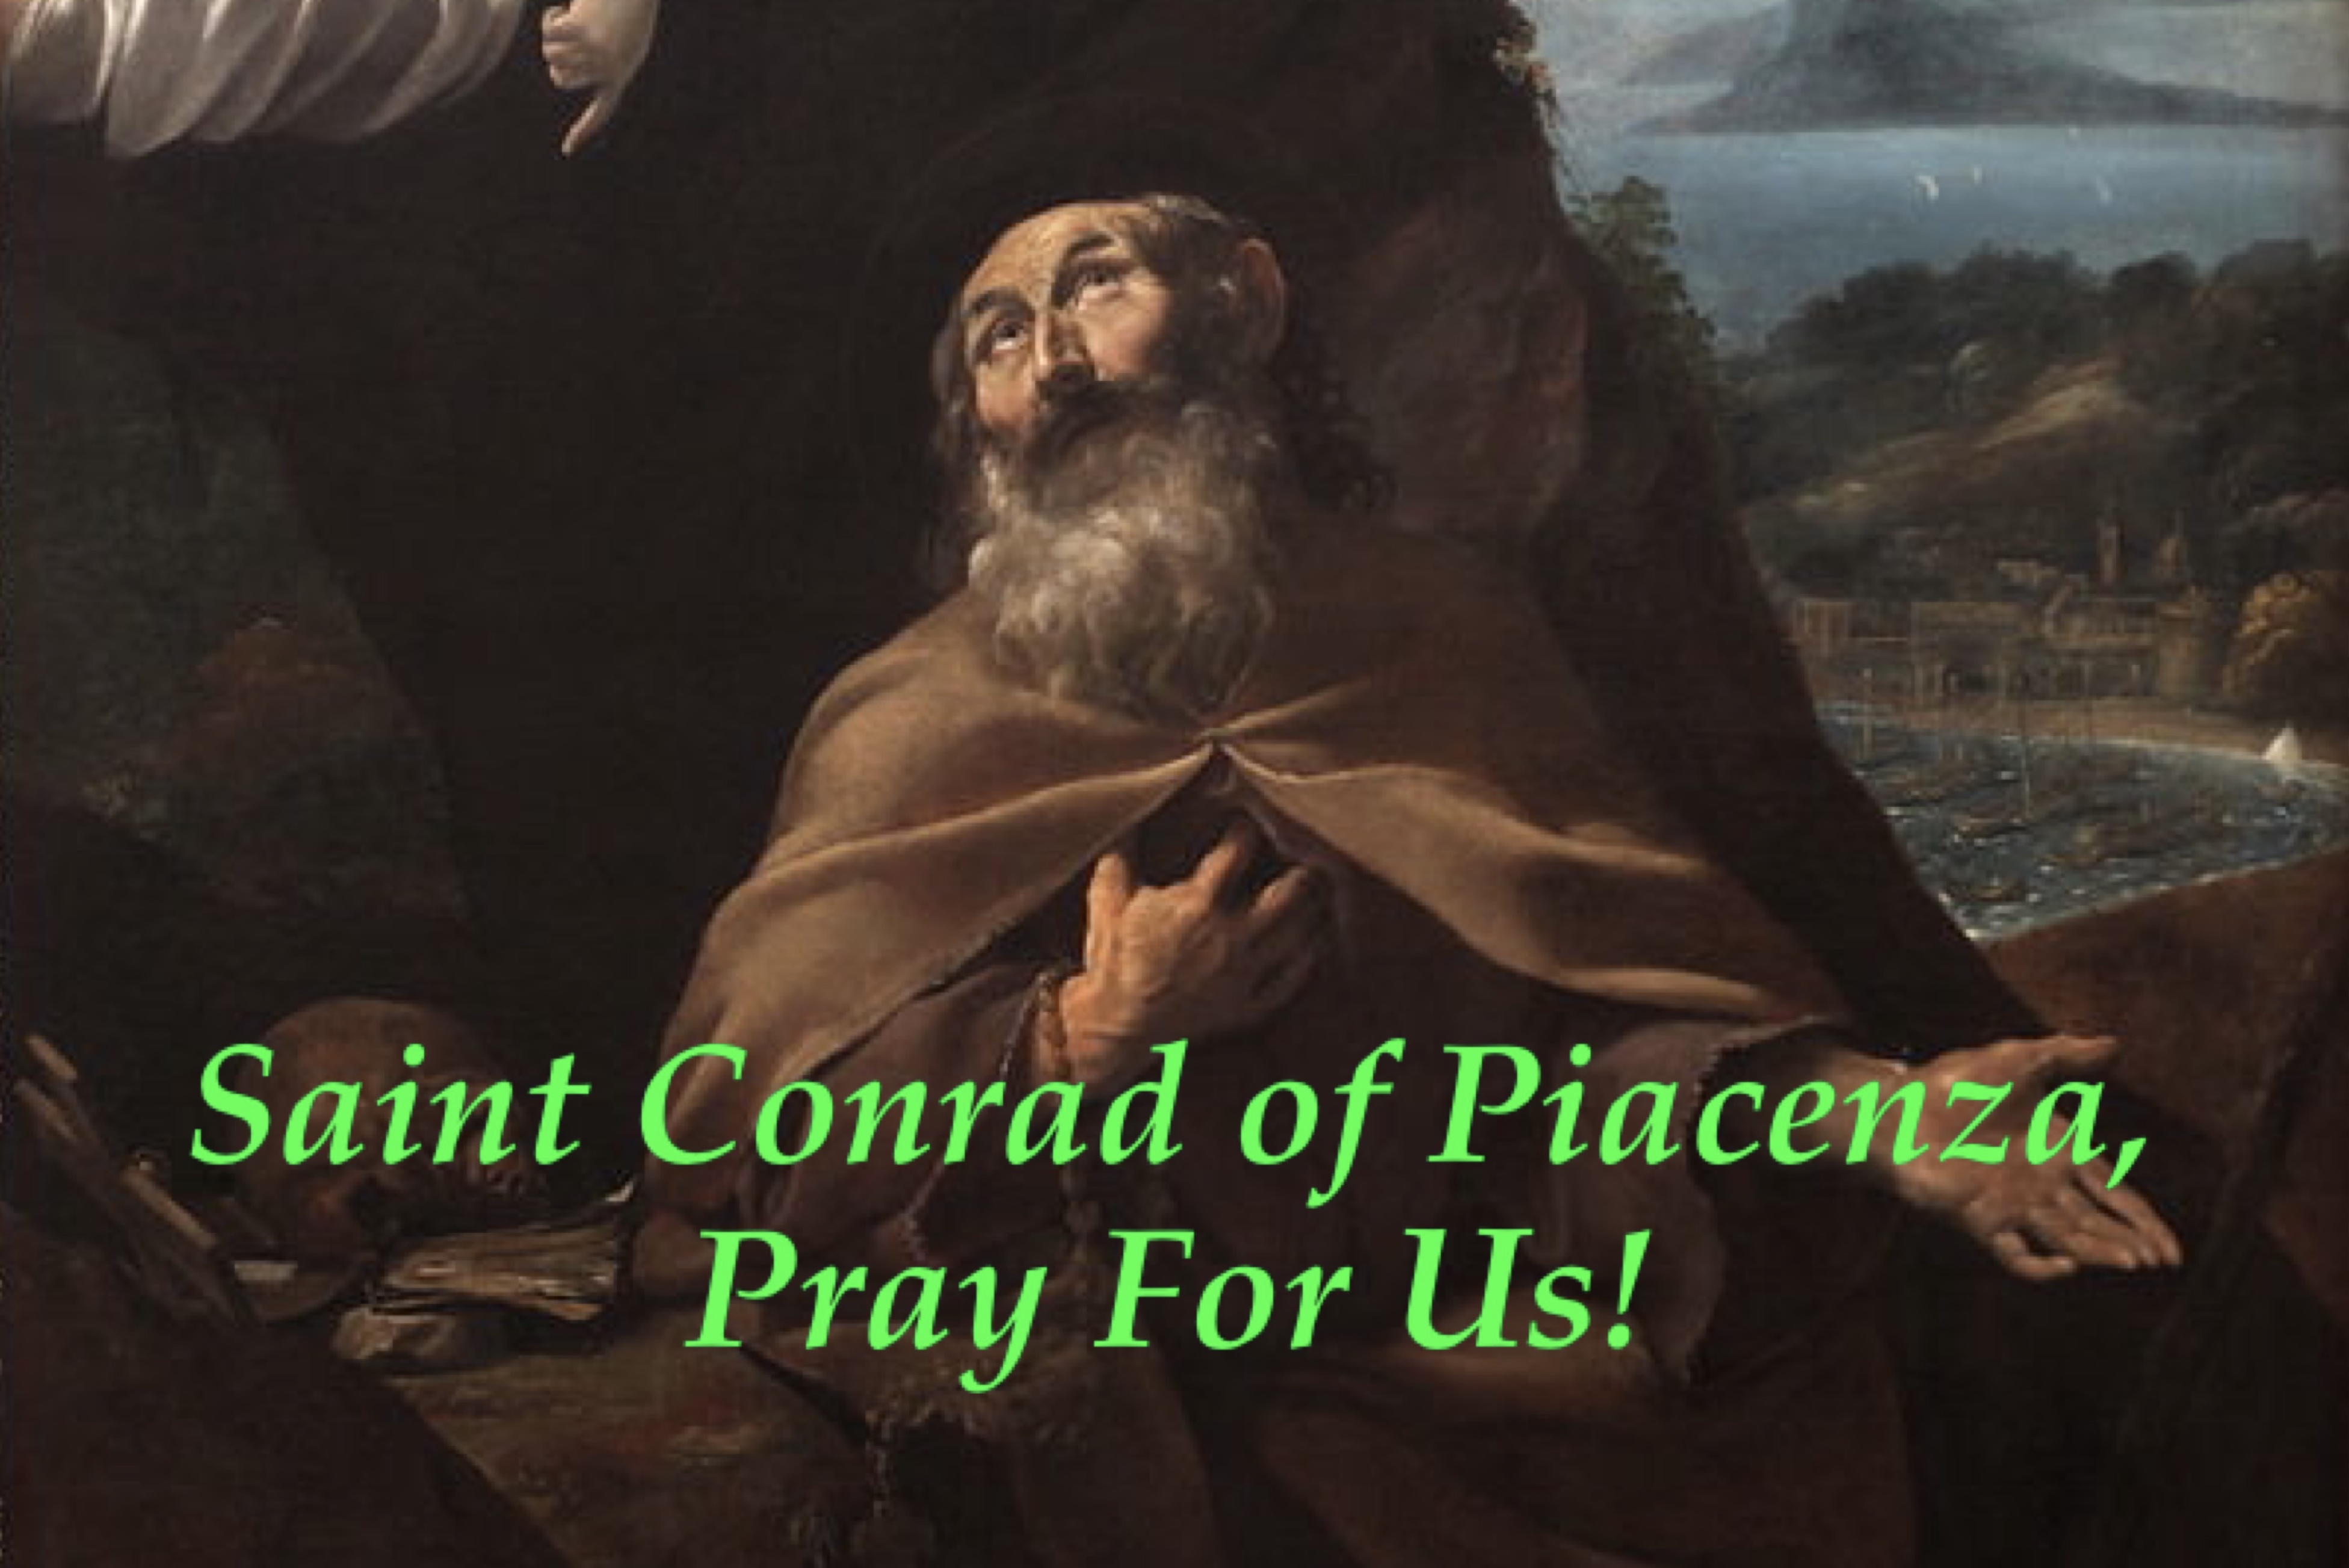 19th February - Saint Conrad of Piacenza